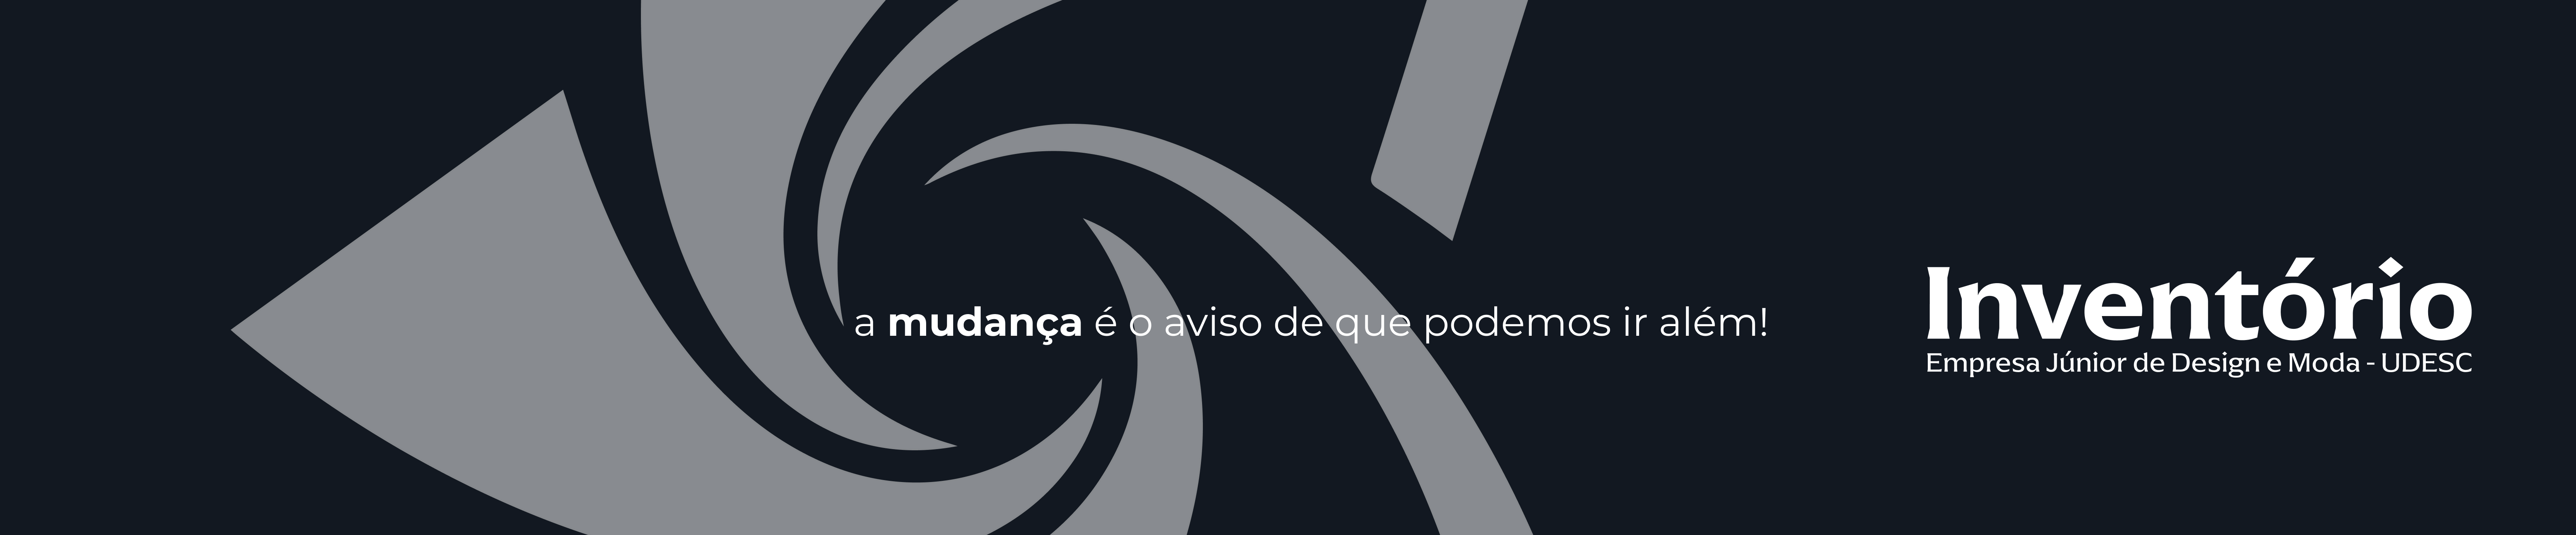 Baner profilu użytkownika Inventório EJDM